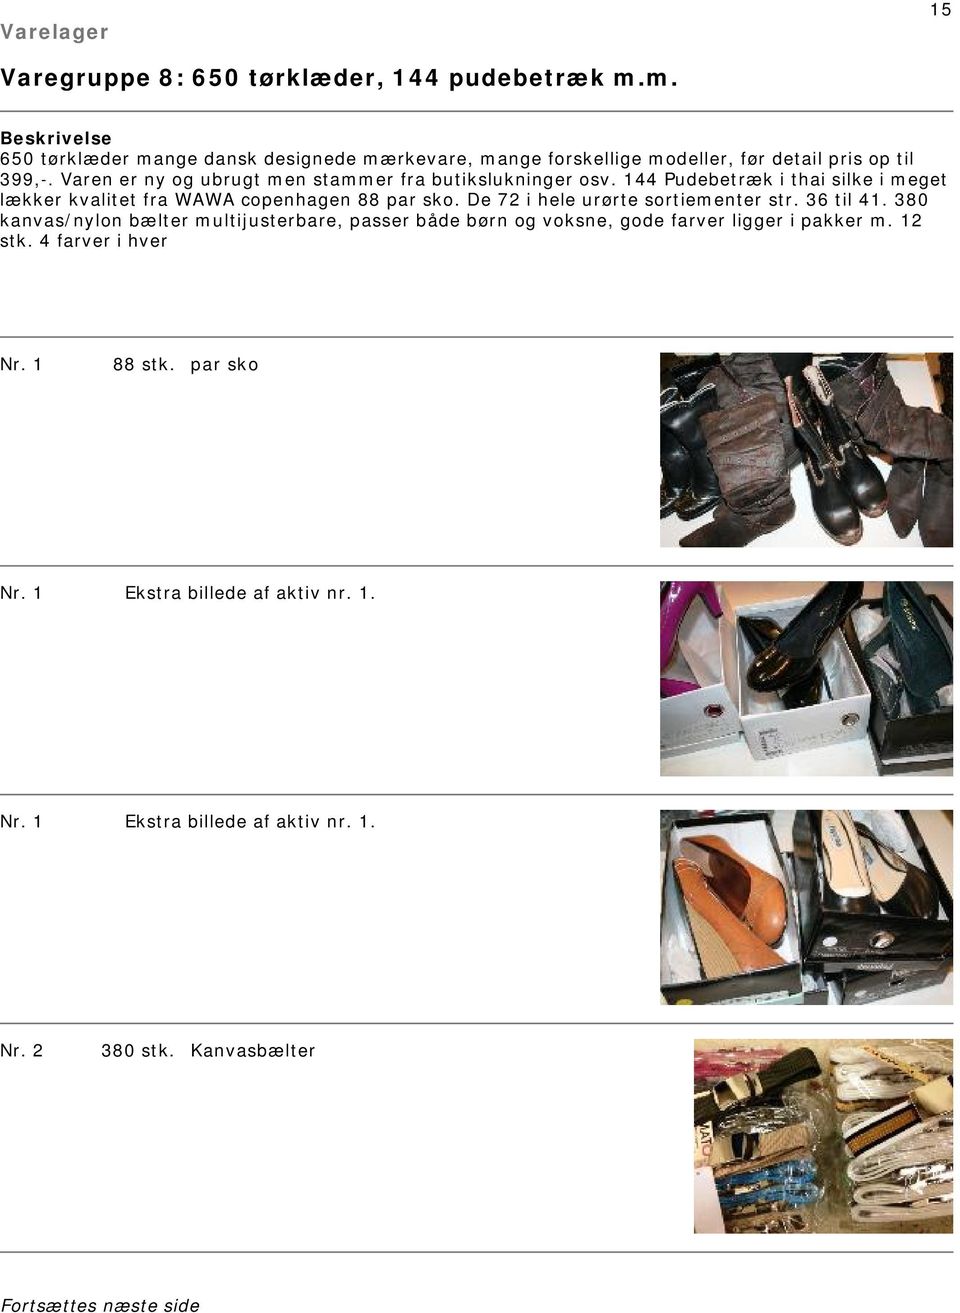 Varen er ny og ubrugt men stammer fra butikslukninger osv. 144 Pudebetræk i thai silke i meget lækker kvalitet fra WAWA copenhagen 88 par sko.